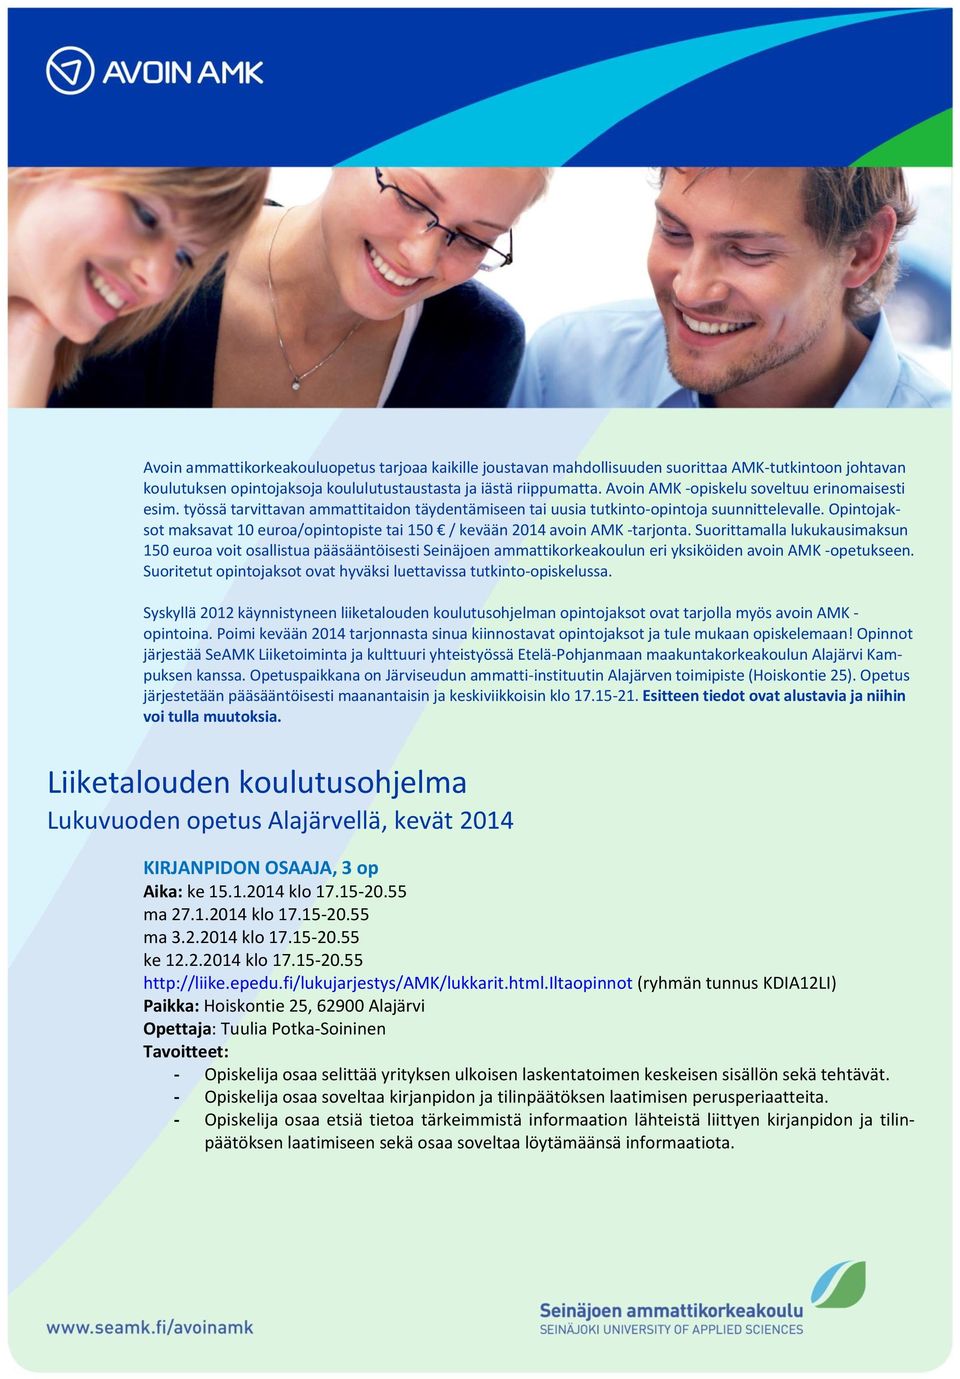 Opintojaksot maksavat 10 euroa/opintopiste tai 150 / kevään 2014 avoin AMK -tarjonta.